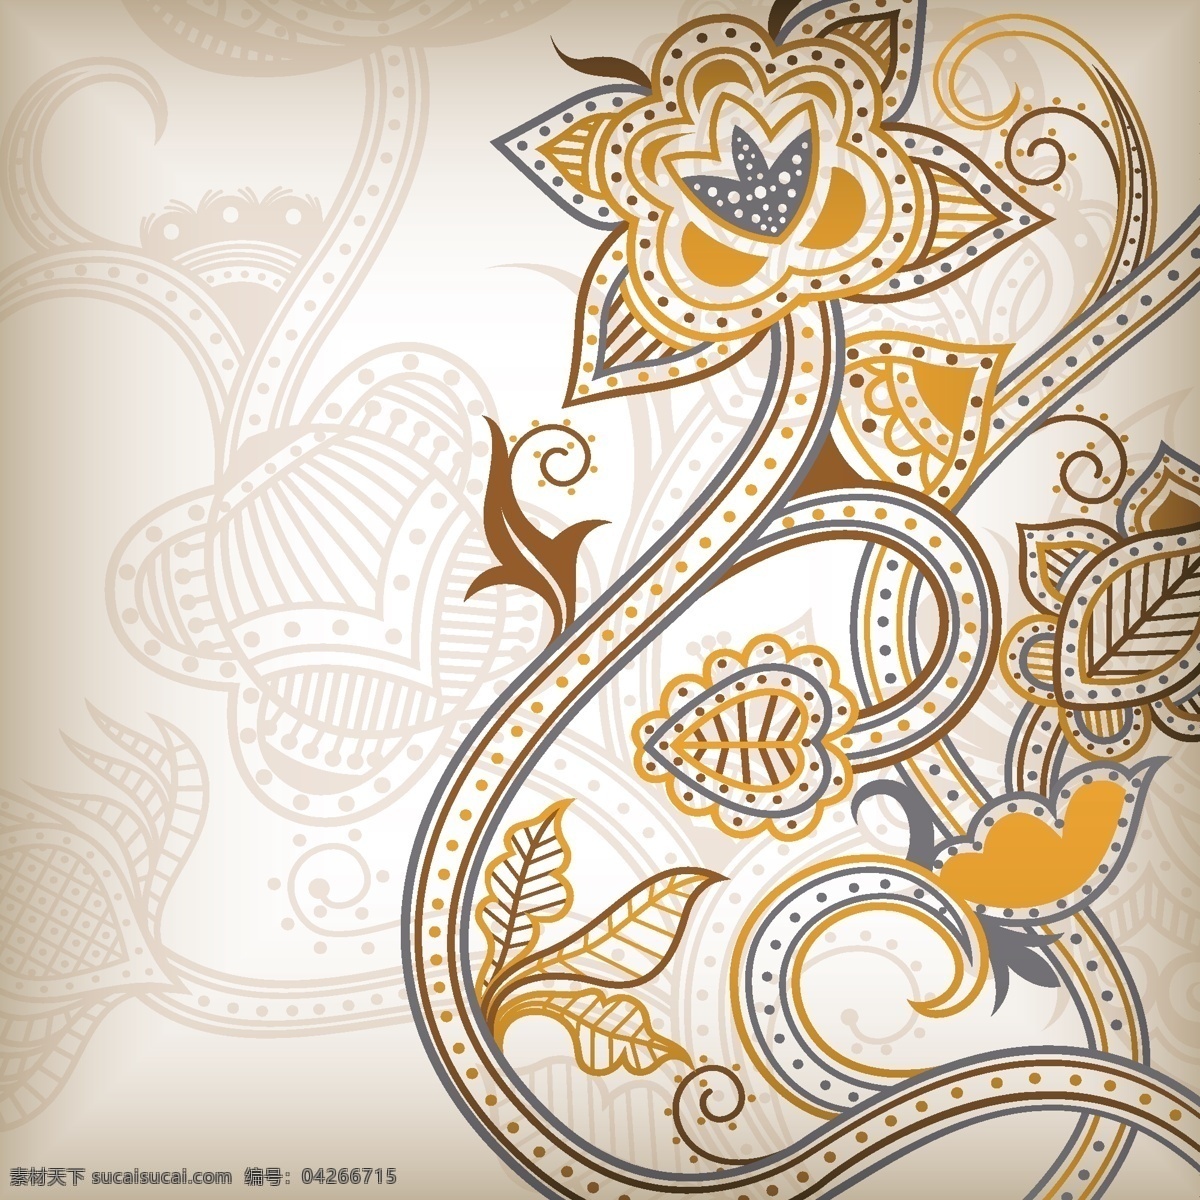 传统 典雅 花纹 背景 矢量 抽象纹样 传统花纹 花卉背景 线稿纹样 矢量图 花纹花边